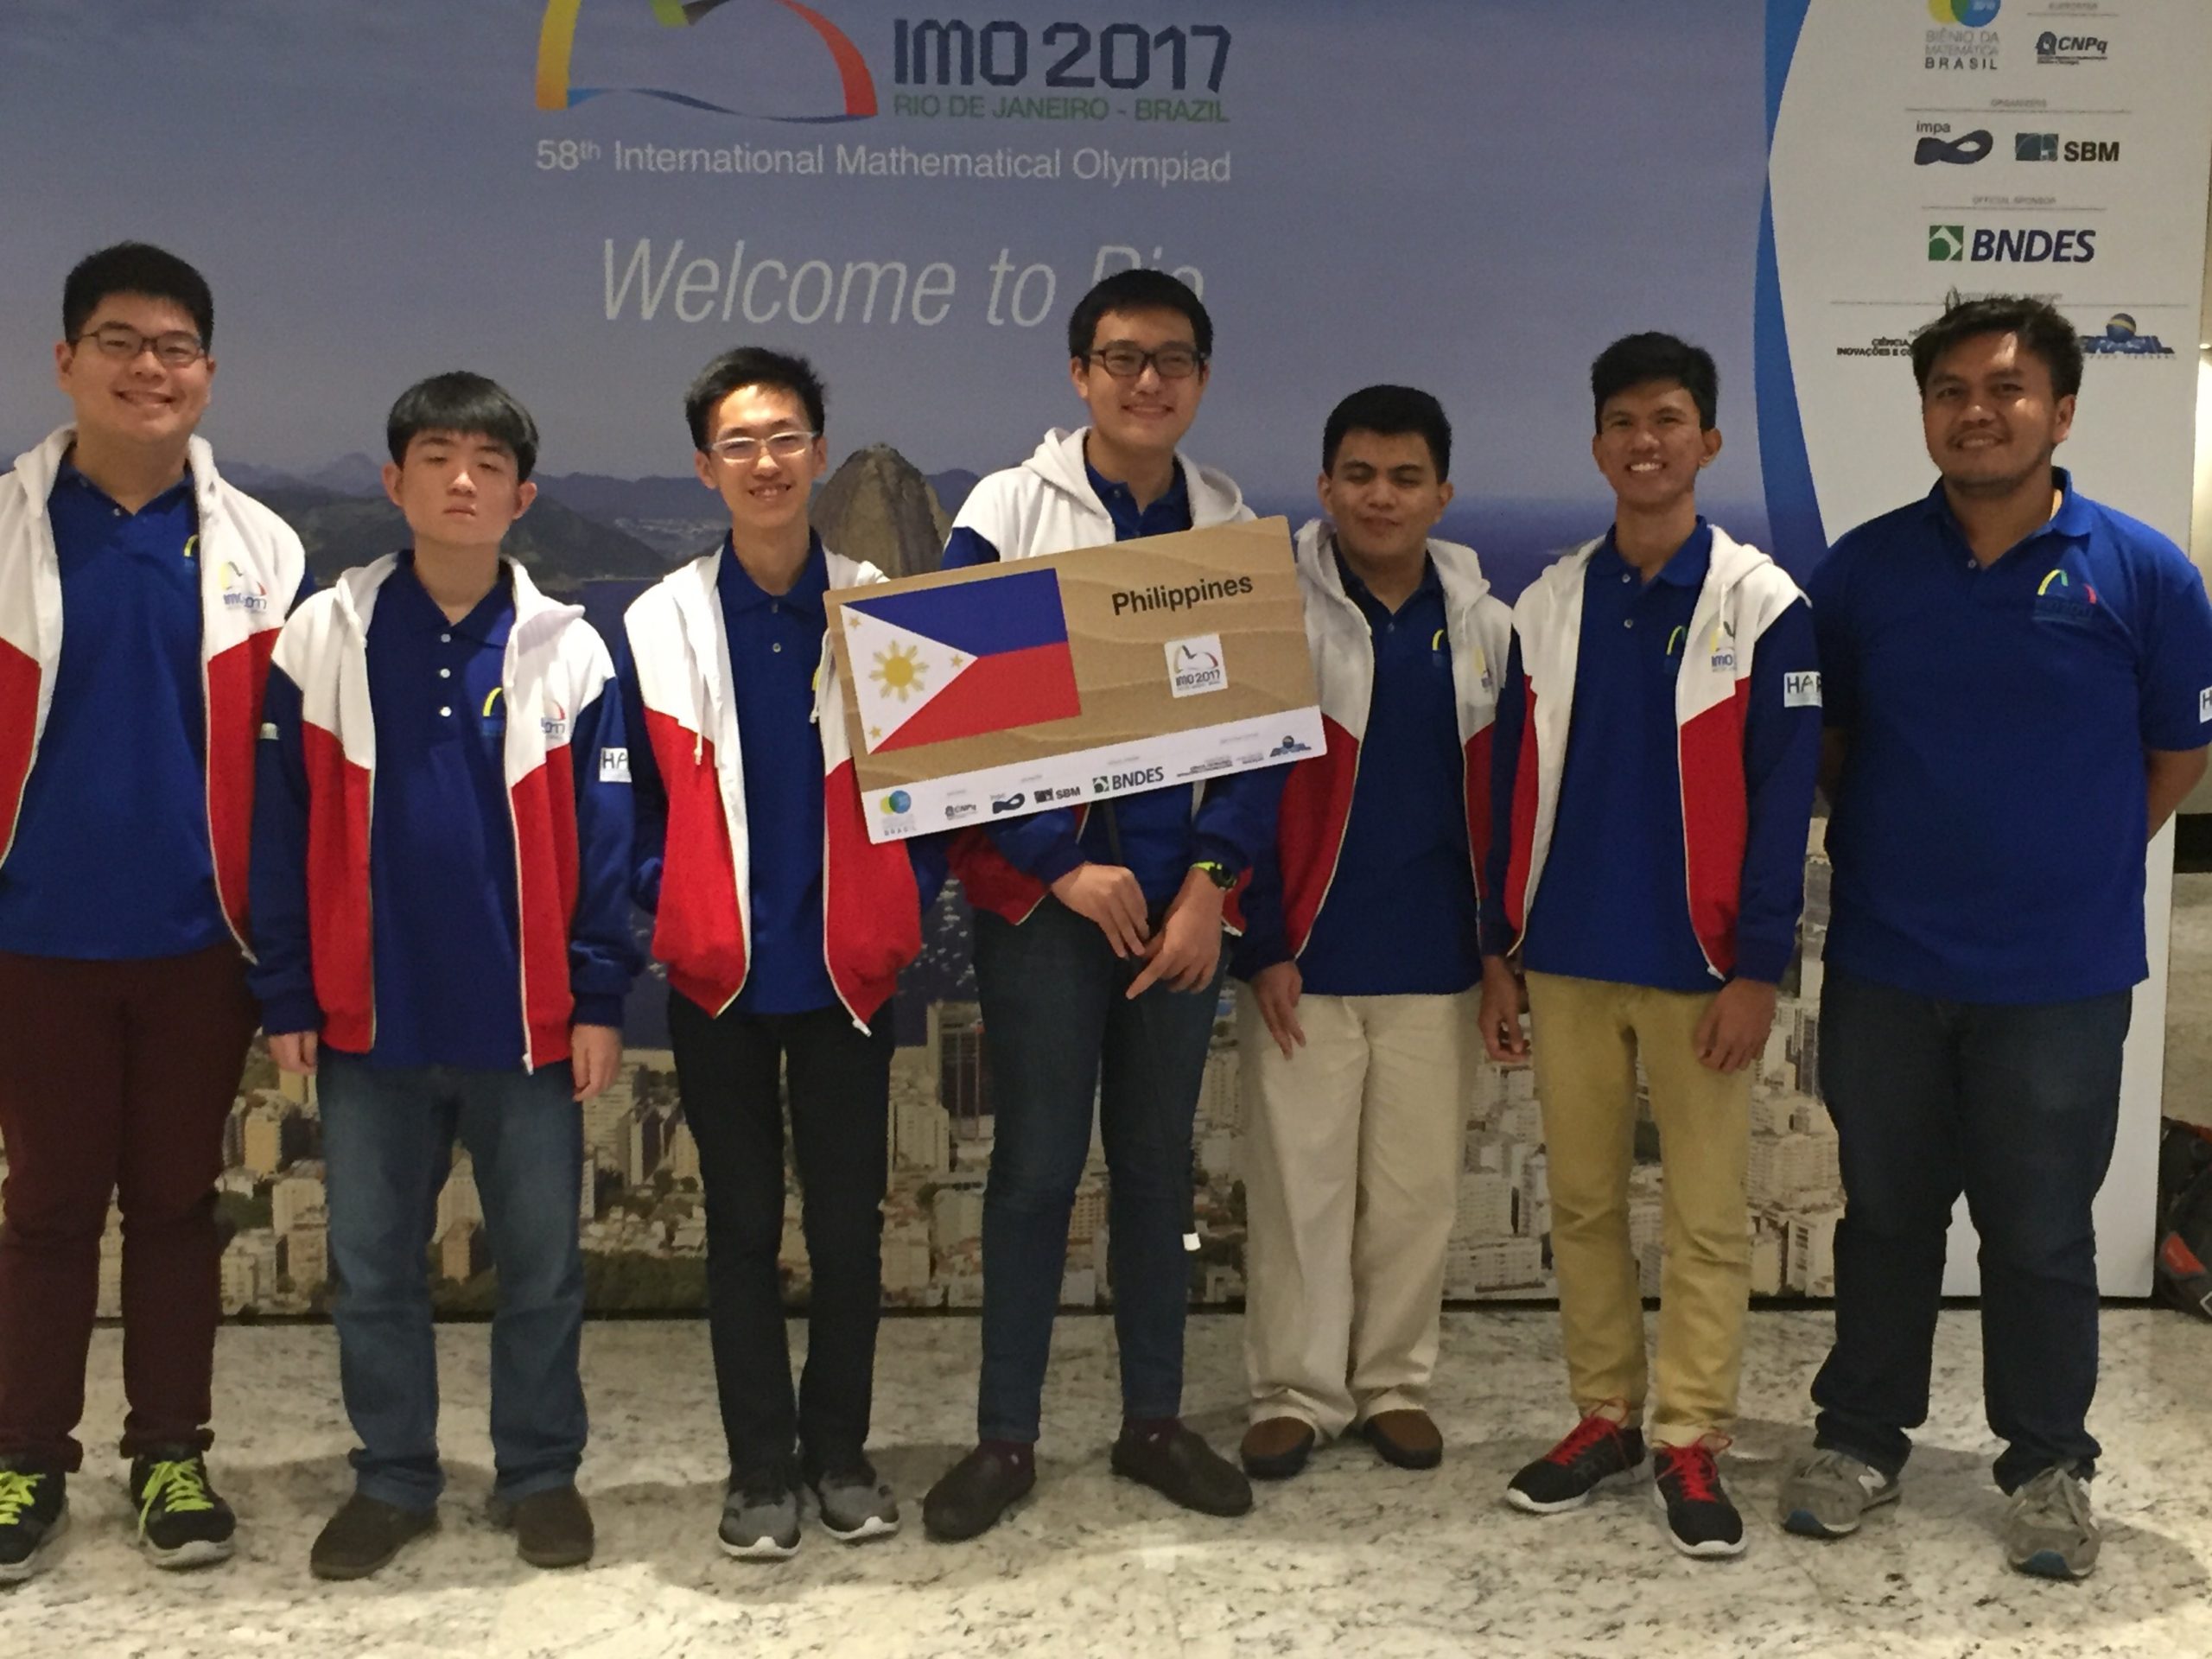 PH Team of IMO 2017